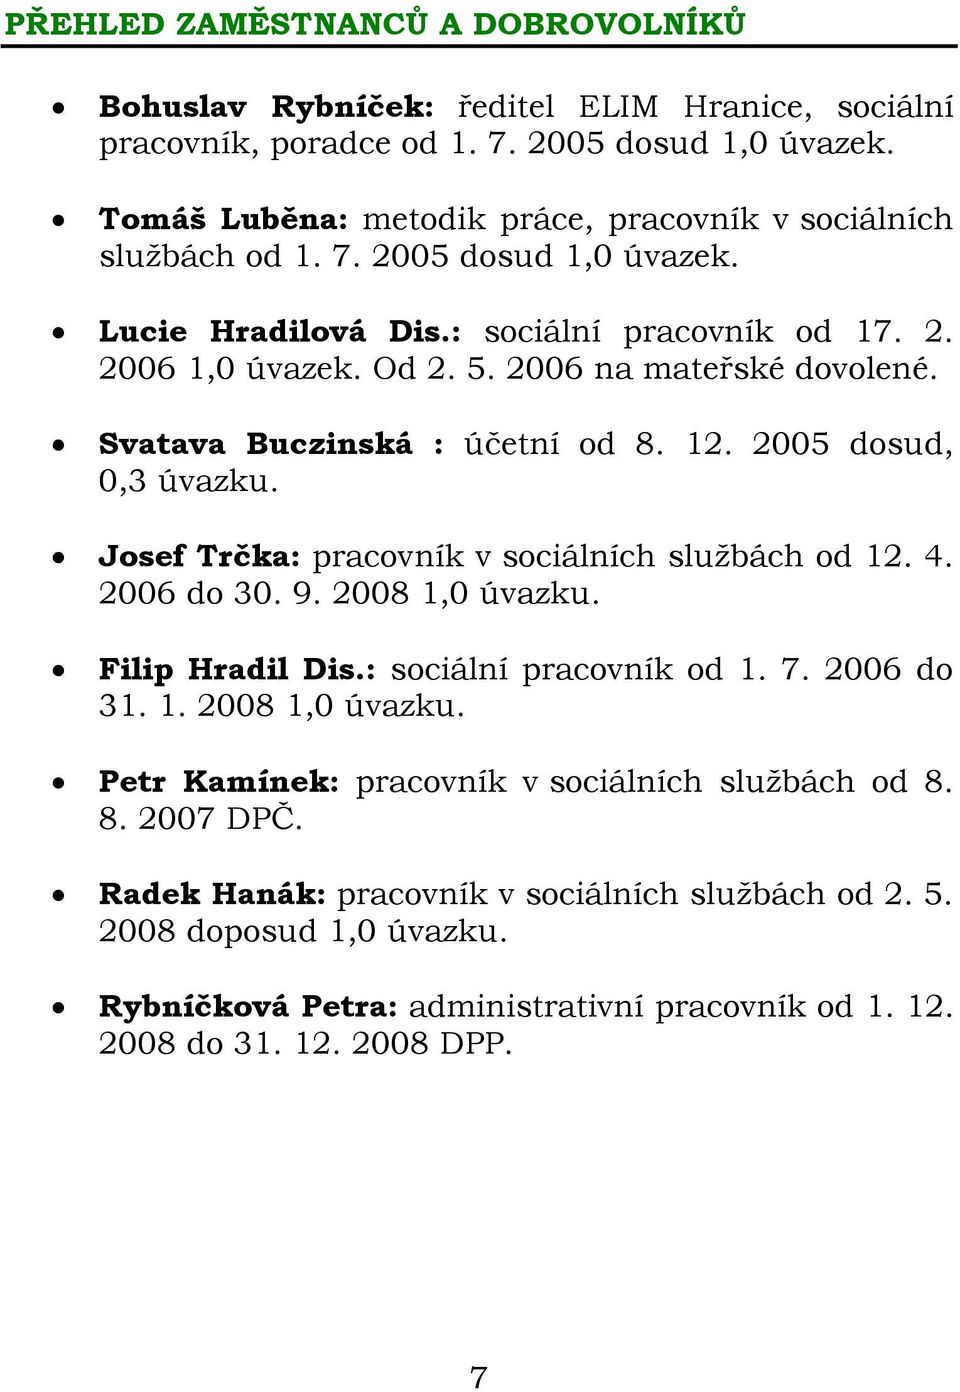 Svatava Buczinská : účetní od 8. 12. 2005 dosud, 0,3 úvazku. Josef Trčka: pracovník v sociálních službách od 12. 4. 2006 do 30. 9. 2008 1,0 úvazku. Filip Hradil Dis.: sociální pracovník od 1. 7.